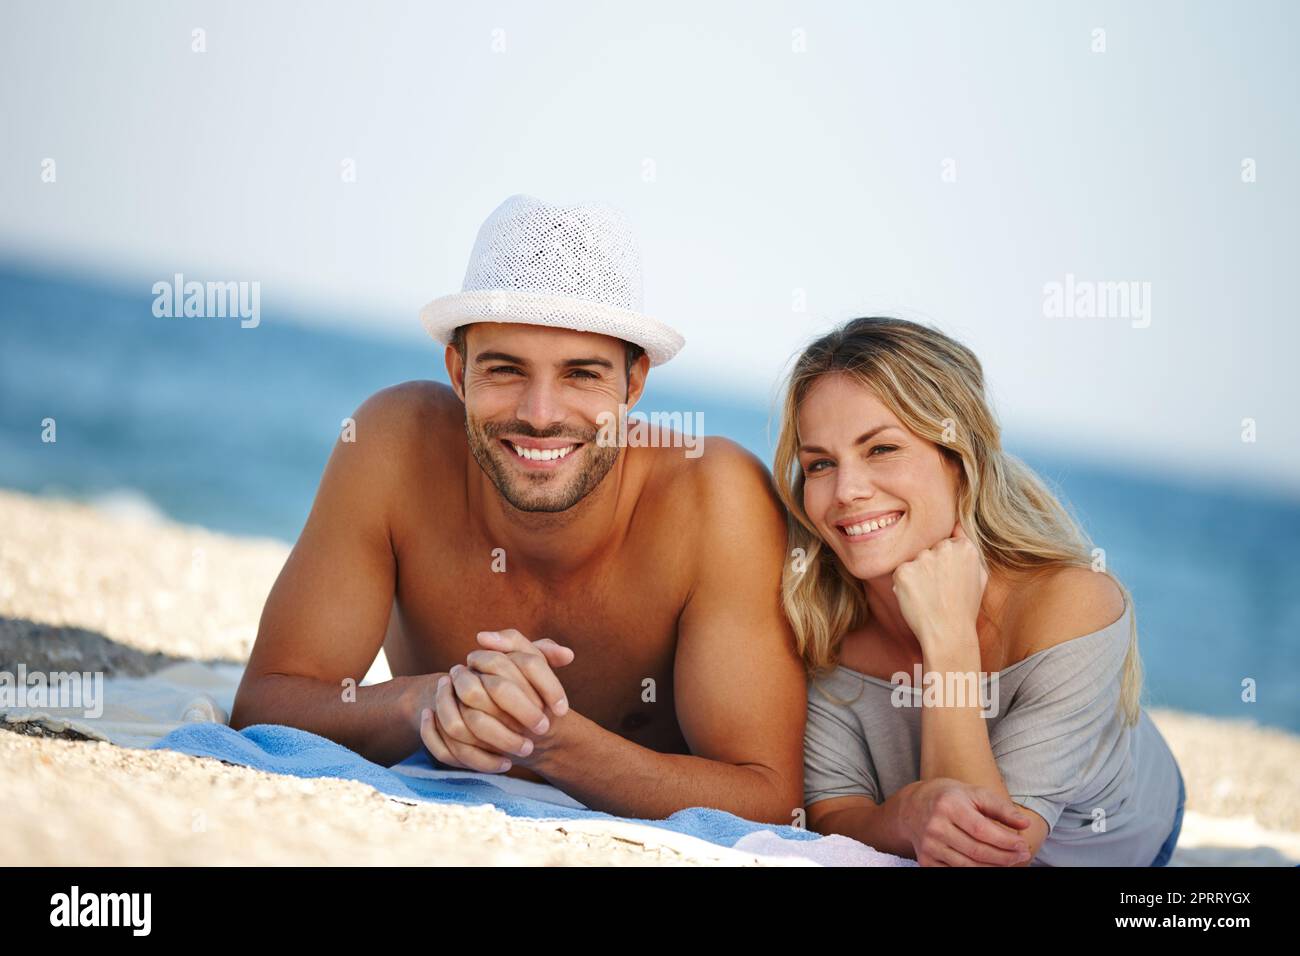 J'adore l'idyllique plage. Portrait d'un jeune couple heureux couché sur la plage Banque D'Images